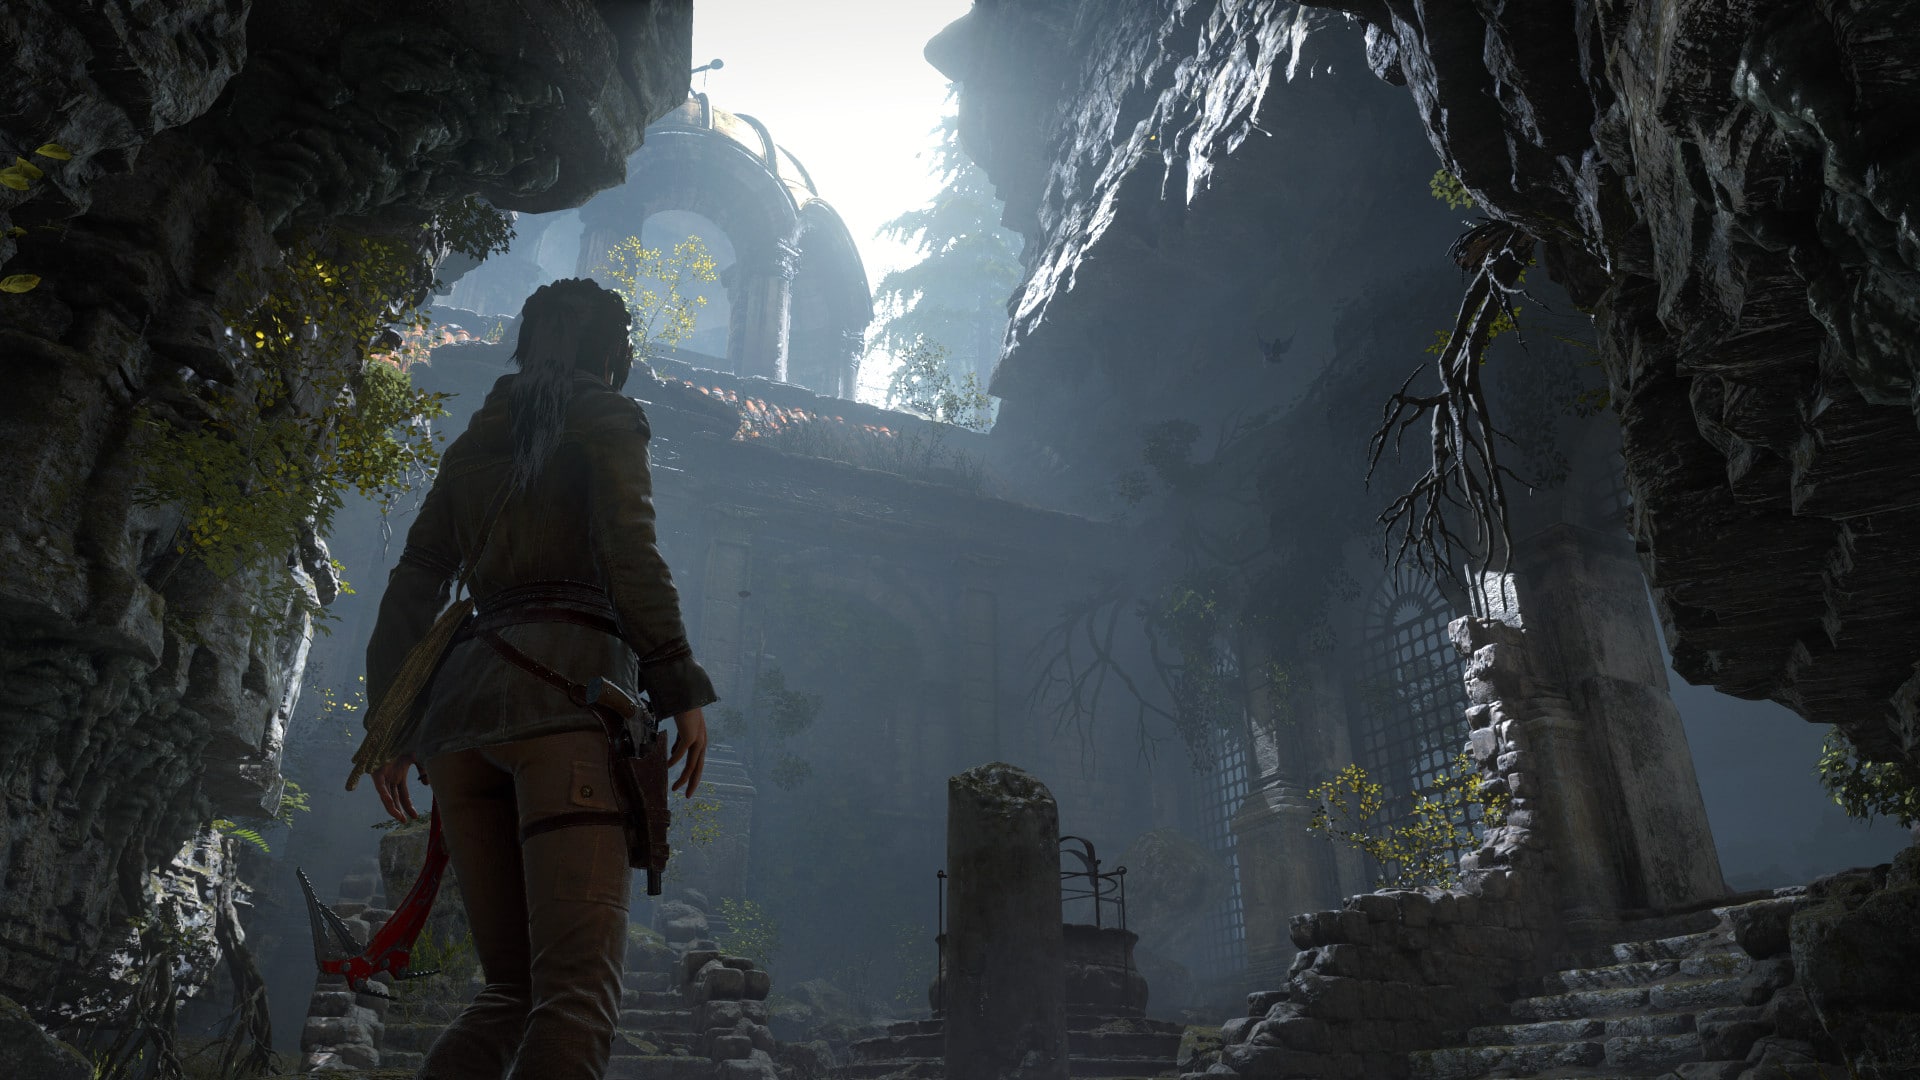 Rise Of The Tomb Raider Die Verlorene Stadt Herausforderungen / Rise of the Tomb Raider #01 - Action am Berggipfel - Let's ... / In shadow of the tomb raider muss sie einen dschungel meistern und grüfte überstehen.